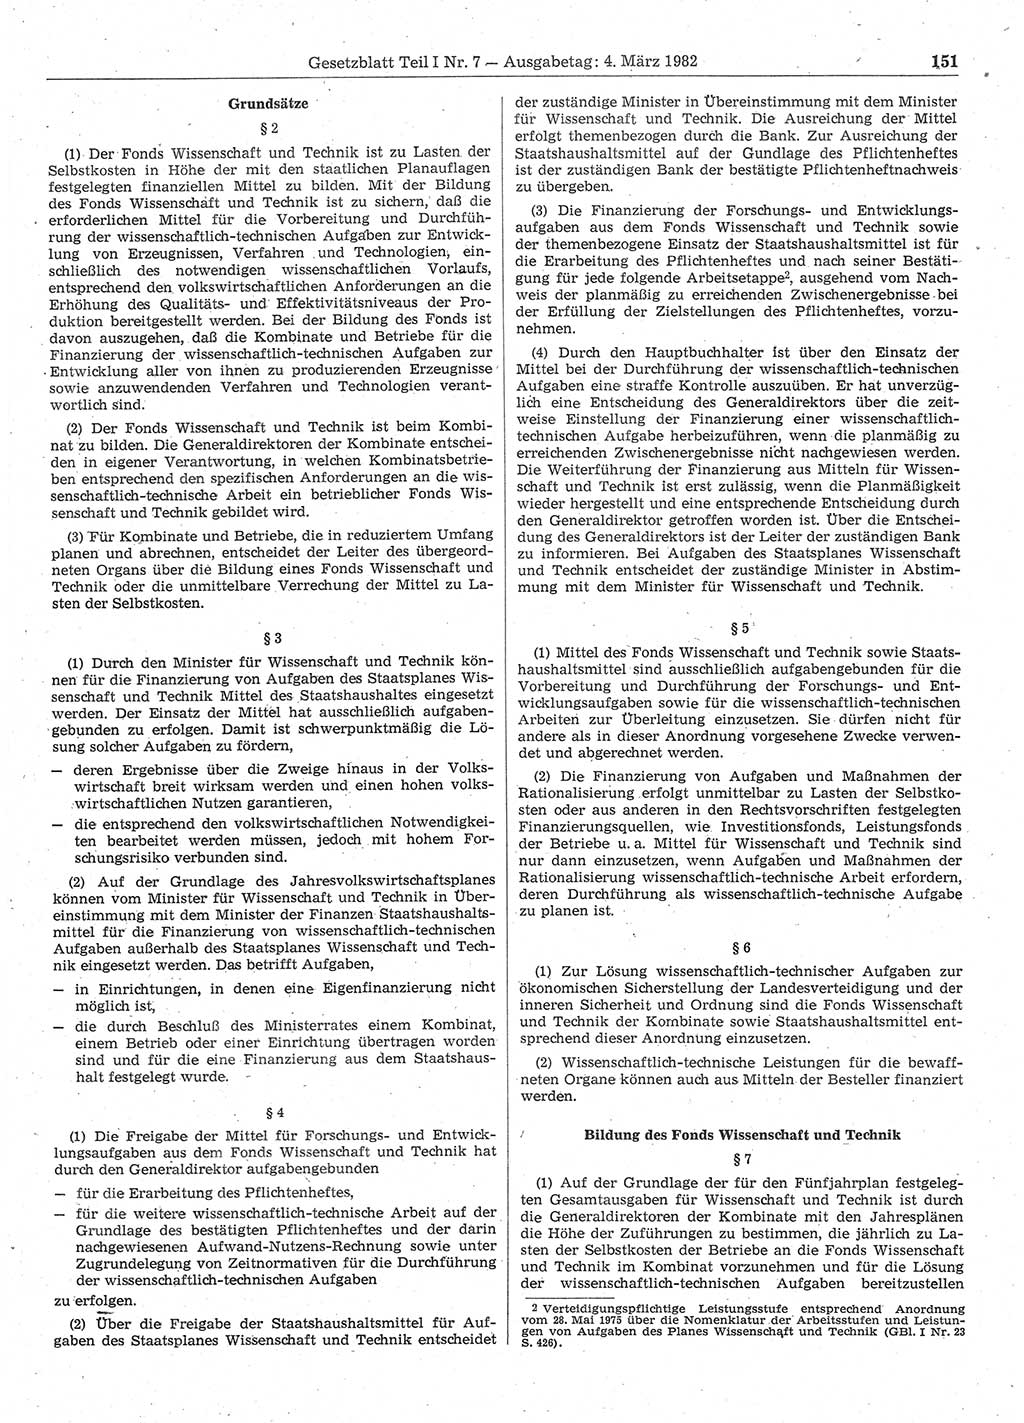 Gesetzblatt (GBl.) der Deutschen Demokratischen Republik (DDR) Teil Ⅰ 1982, Seite 151 (GBl. DDR Ⅰ 1982, S. 151)